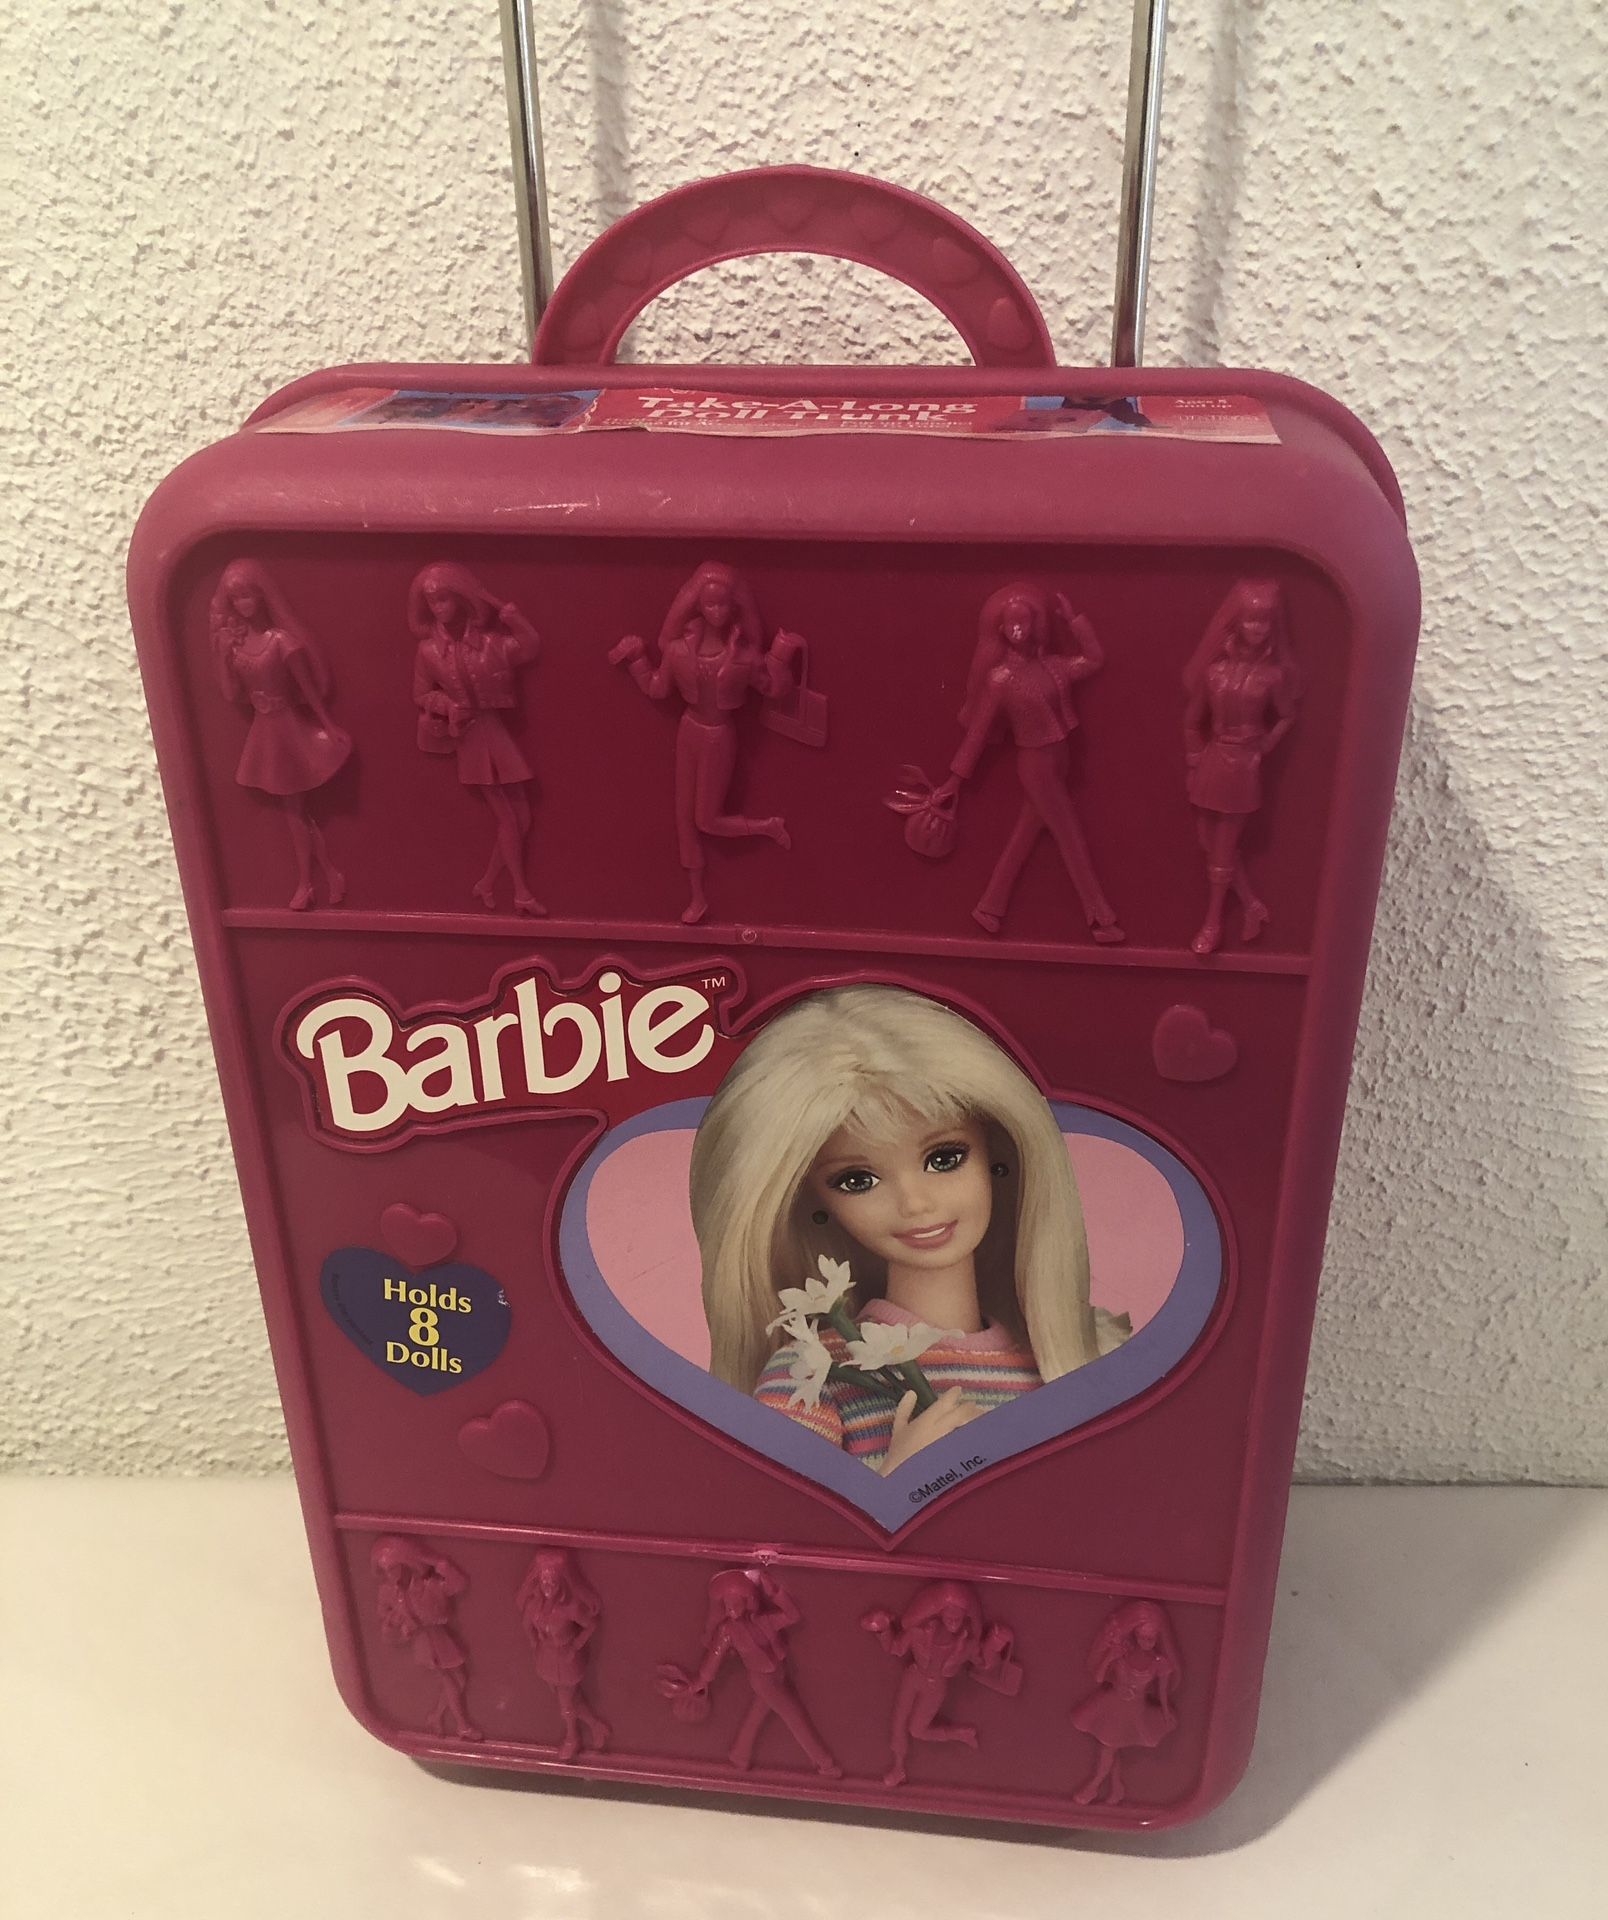 Vintage 1998 Barbie Take Along Doll Trunk Rolling Suitcase , Hard Case Pink Holds 8 Dolls